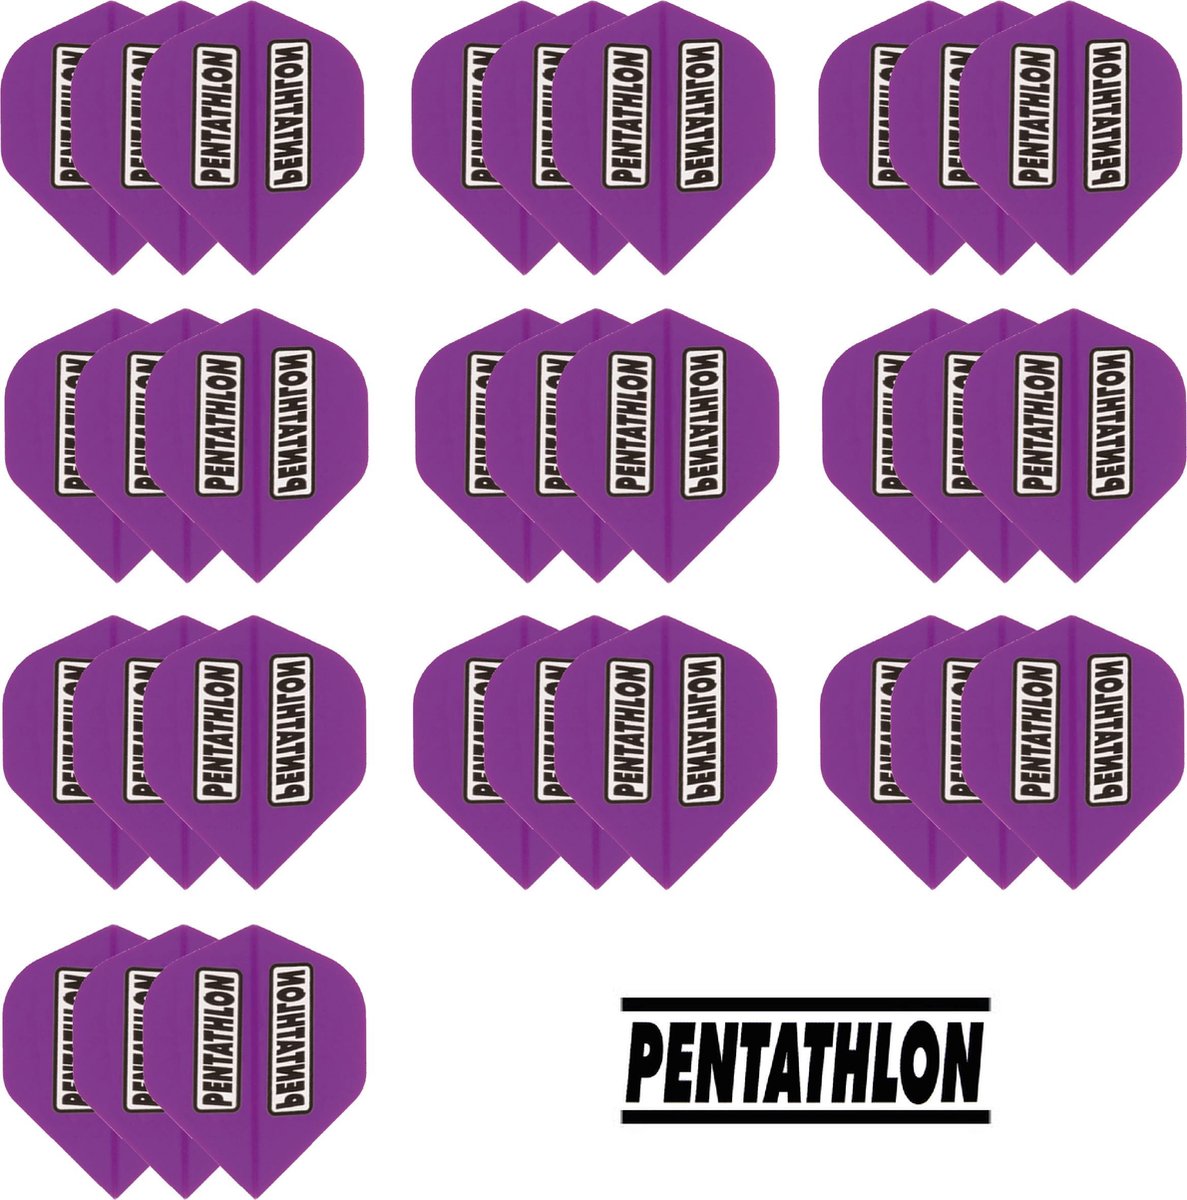 Dragon Darts - Pentathlon - 10 sets (30 stuks) - dart flights - Paars